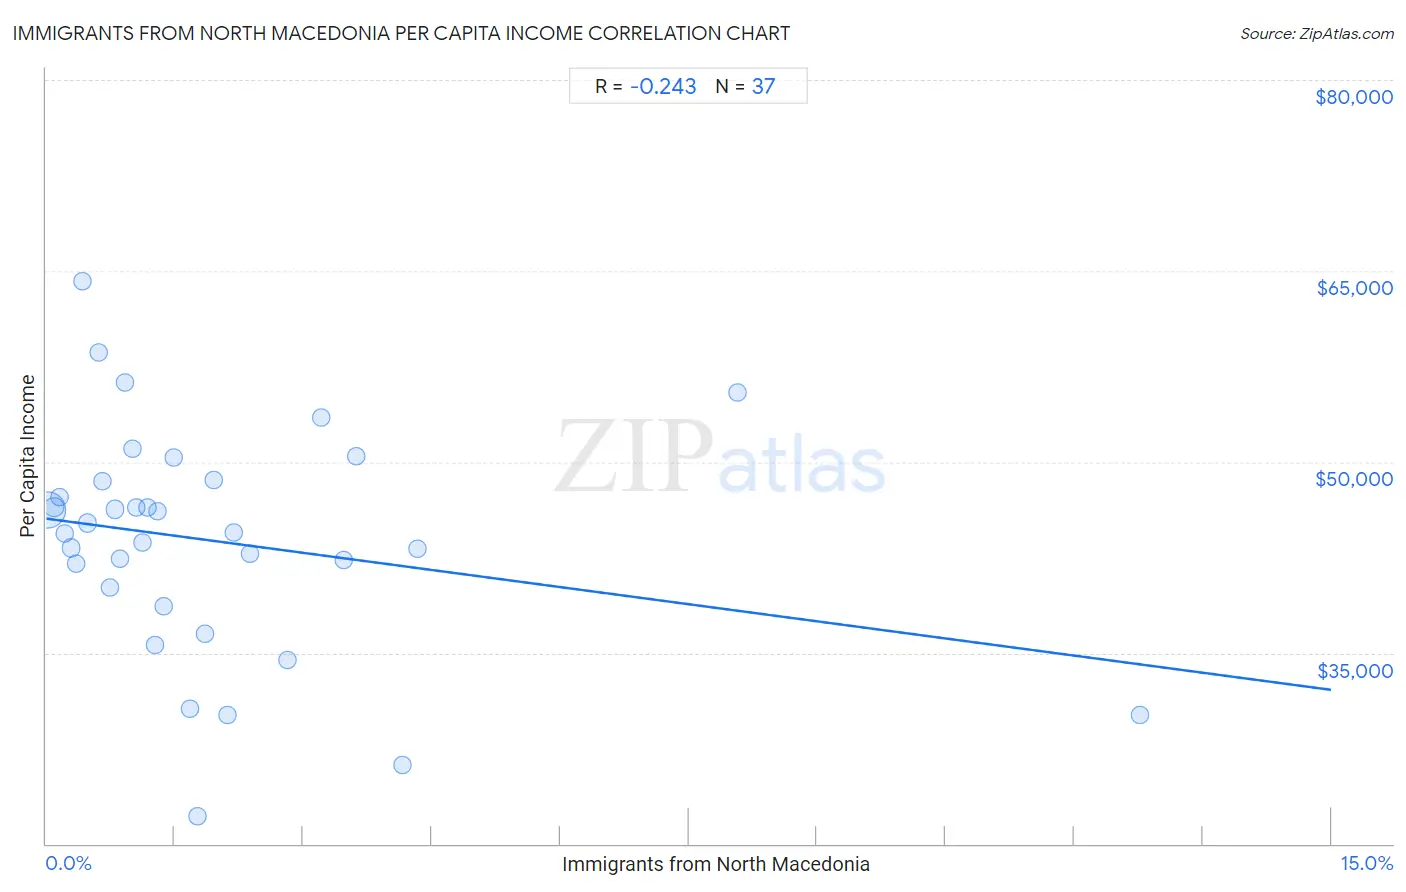 Immigrants from North Macedonia Per Capita Income